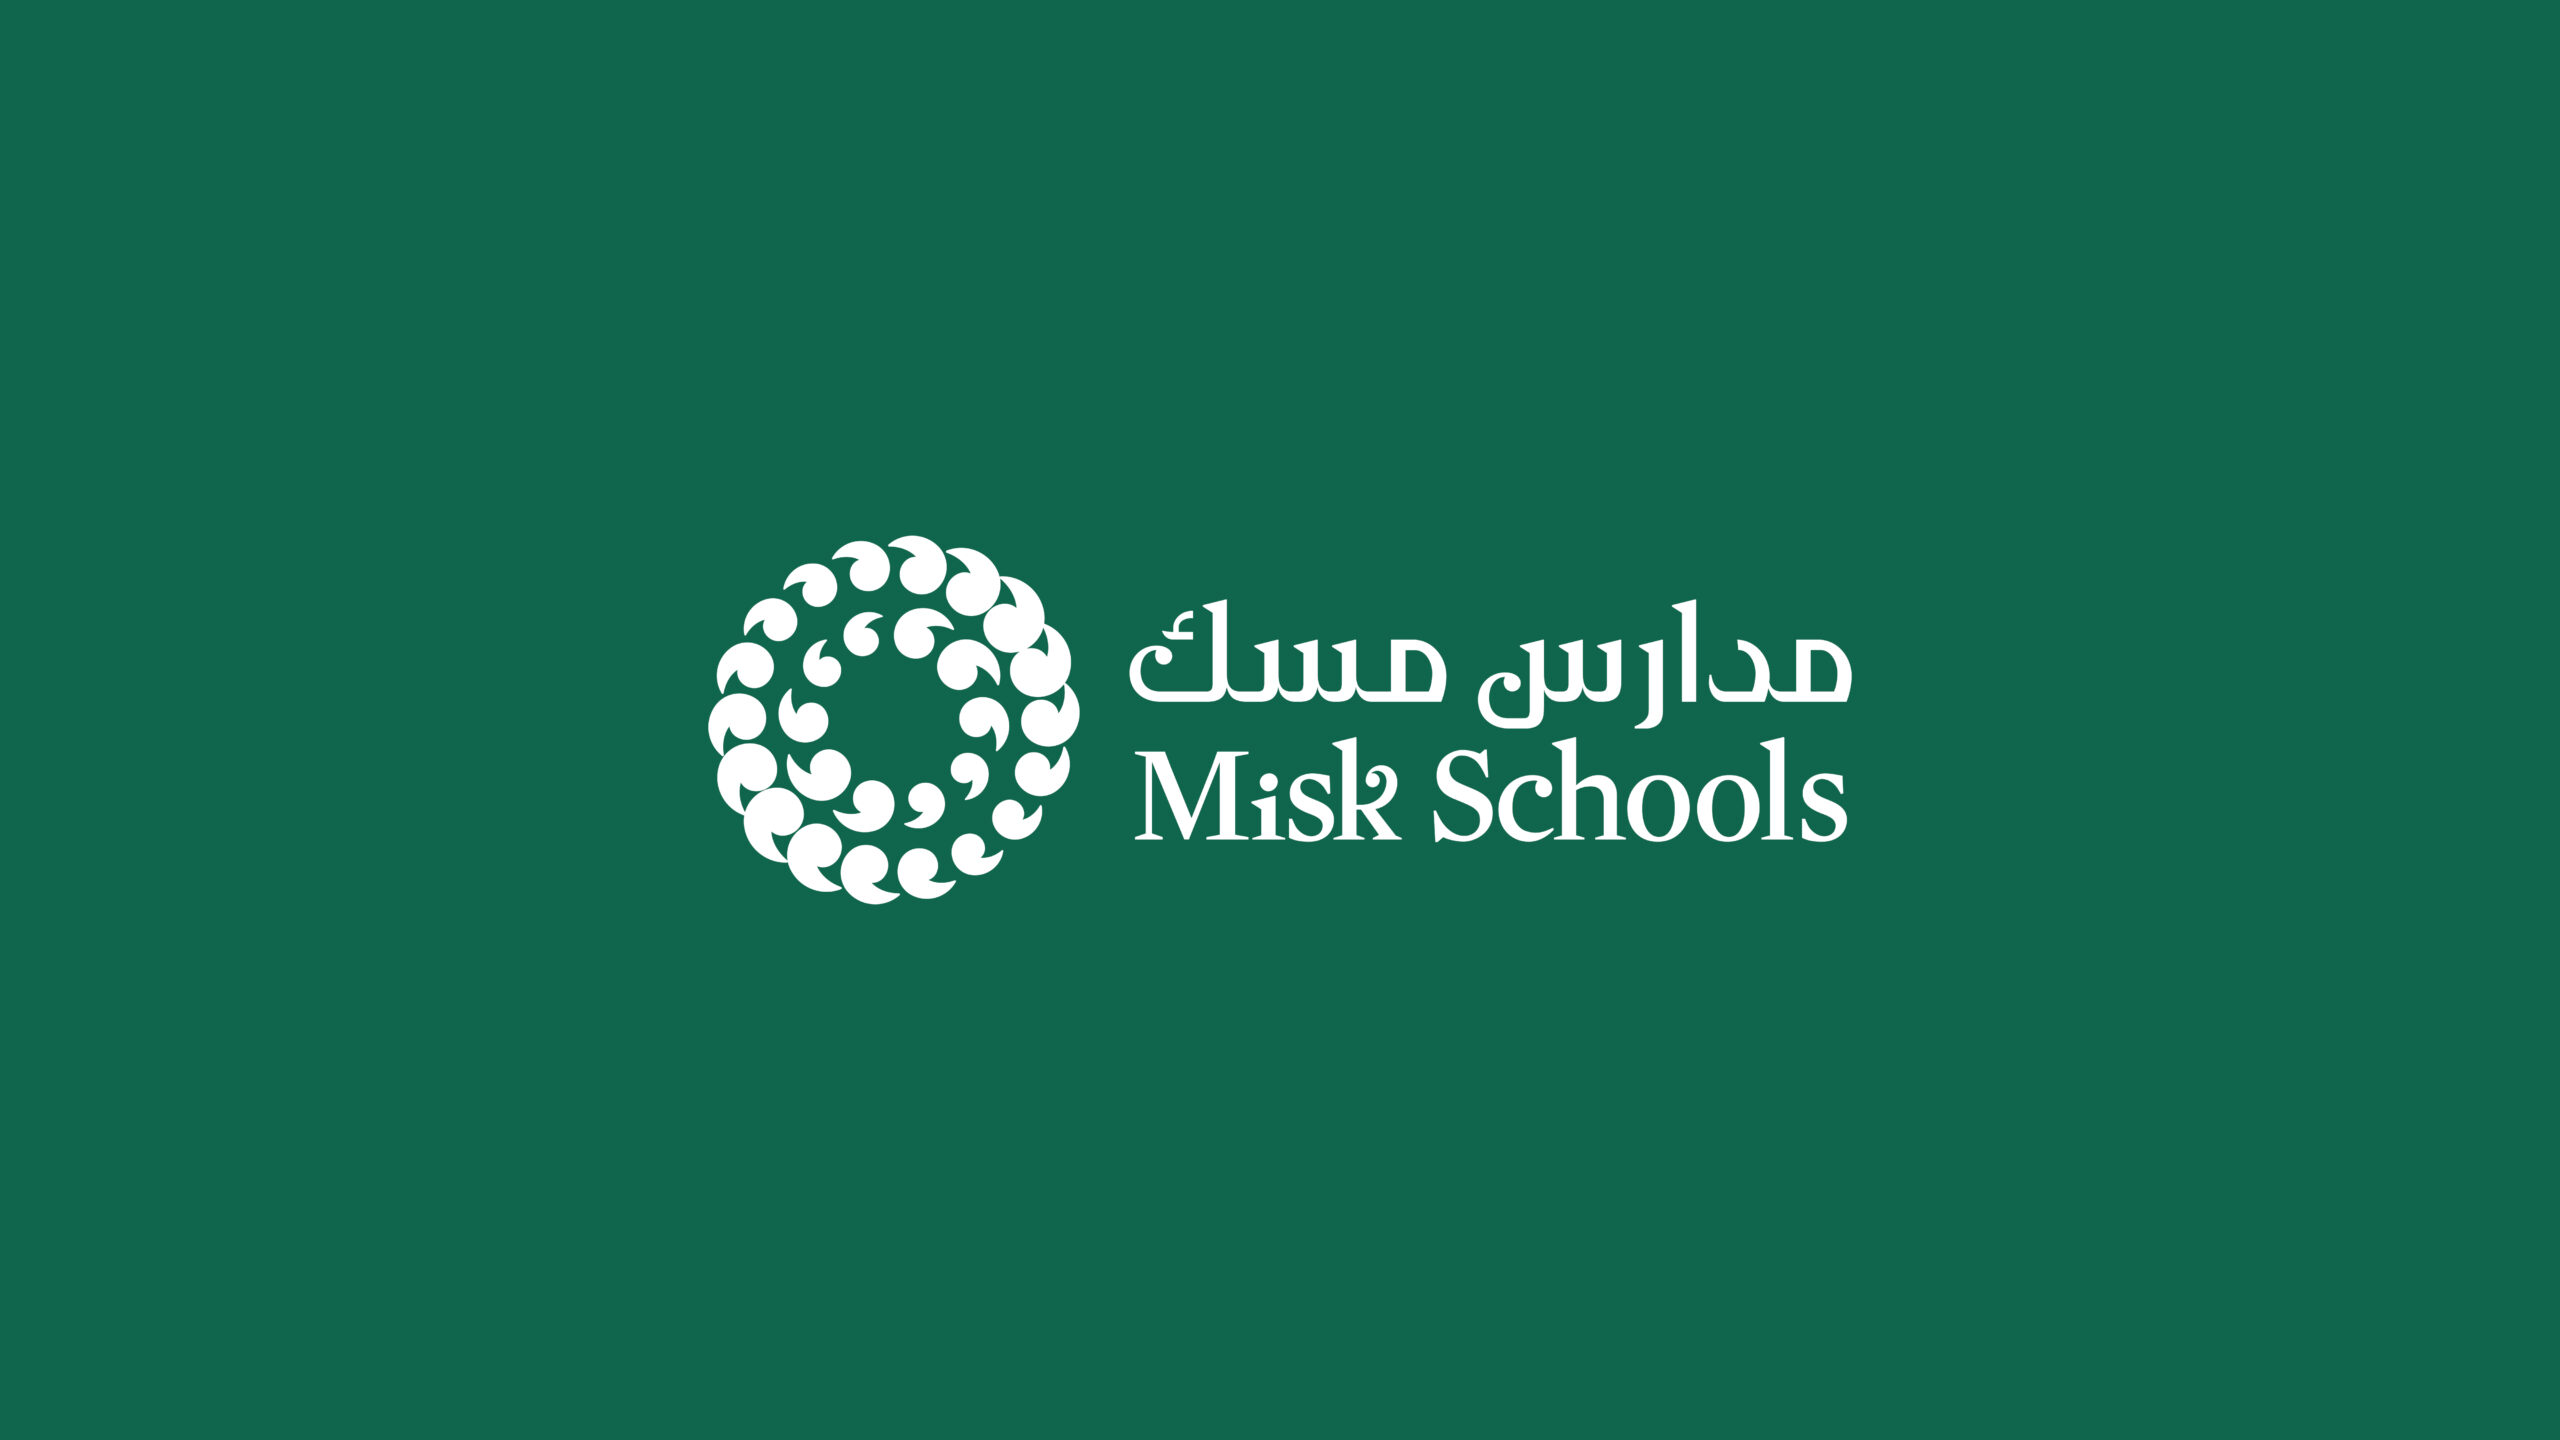 Misk Schools En logo_GB